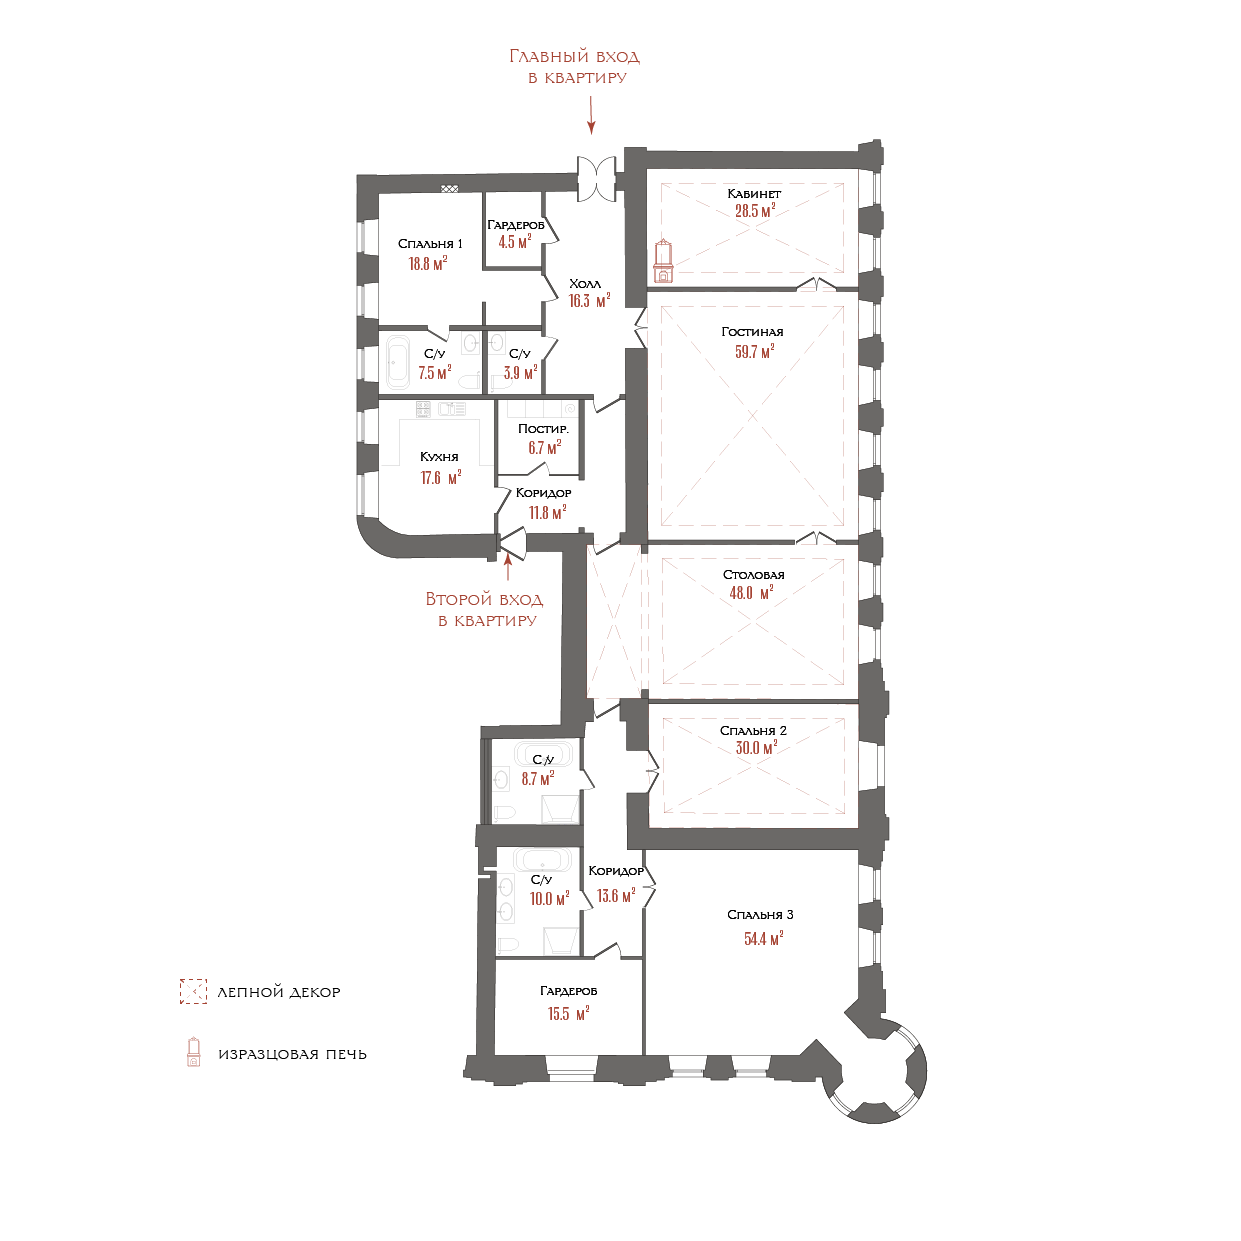 6-комнатная квартира  №16 в Три грации: 357.4 м², этаж 4 - купить в Санкт-Петербурге